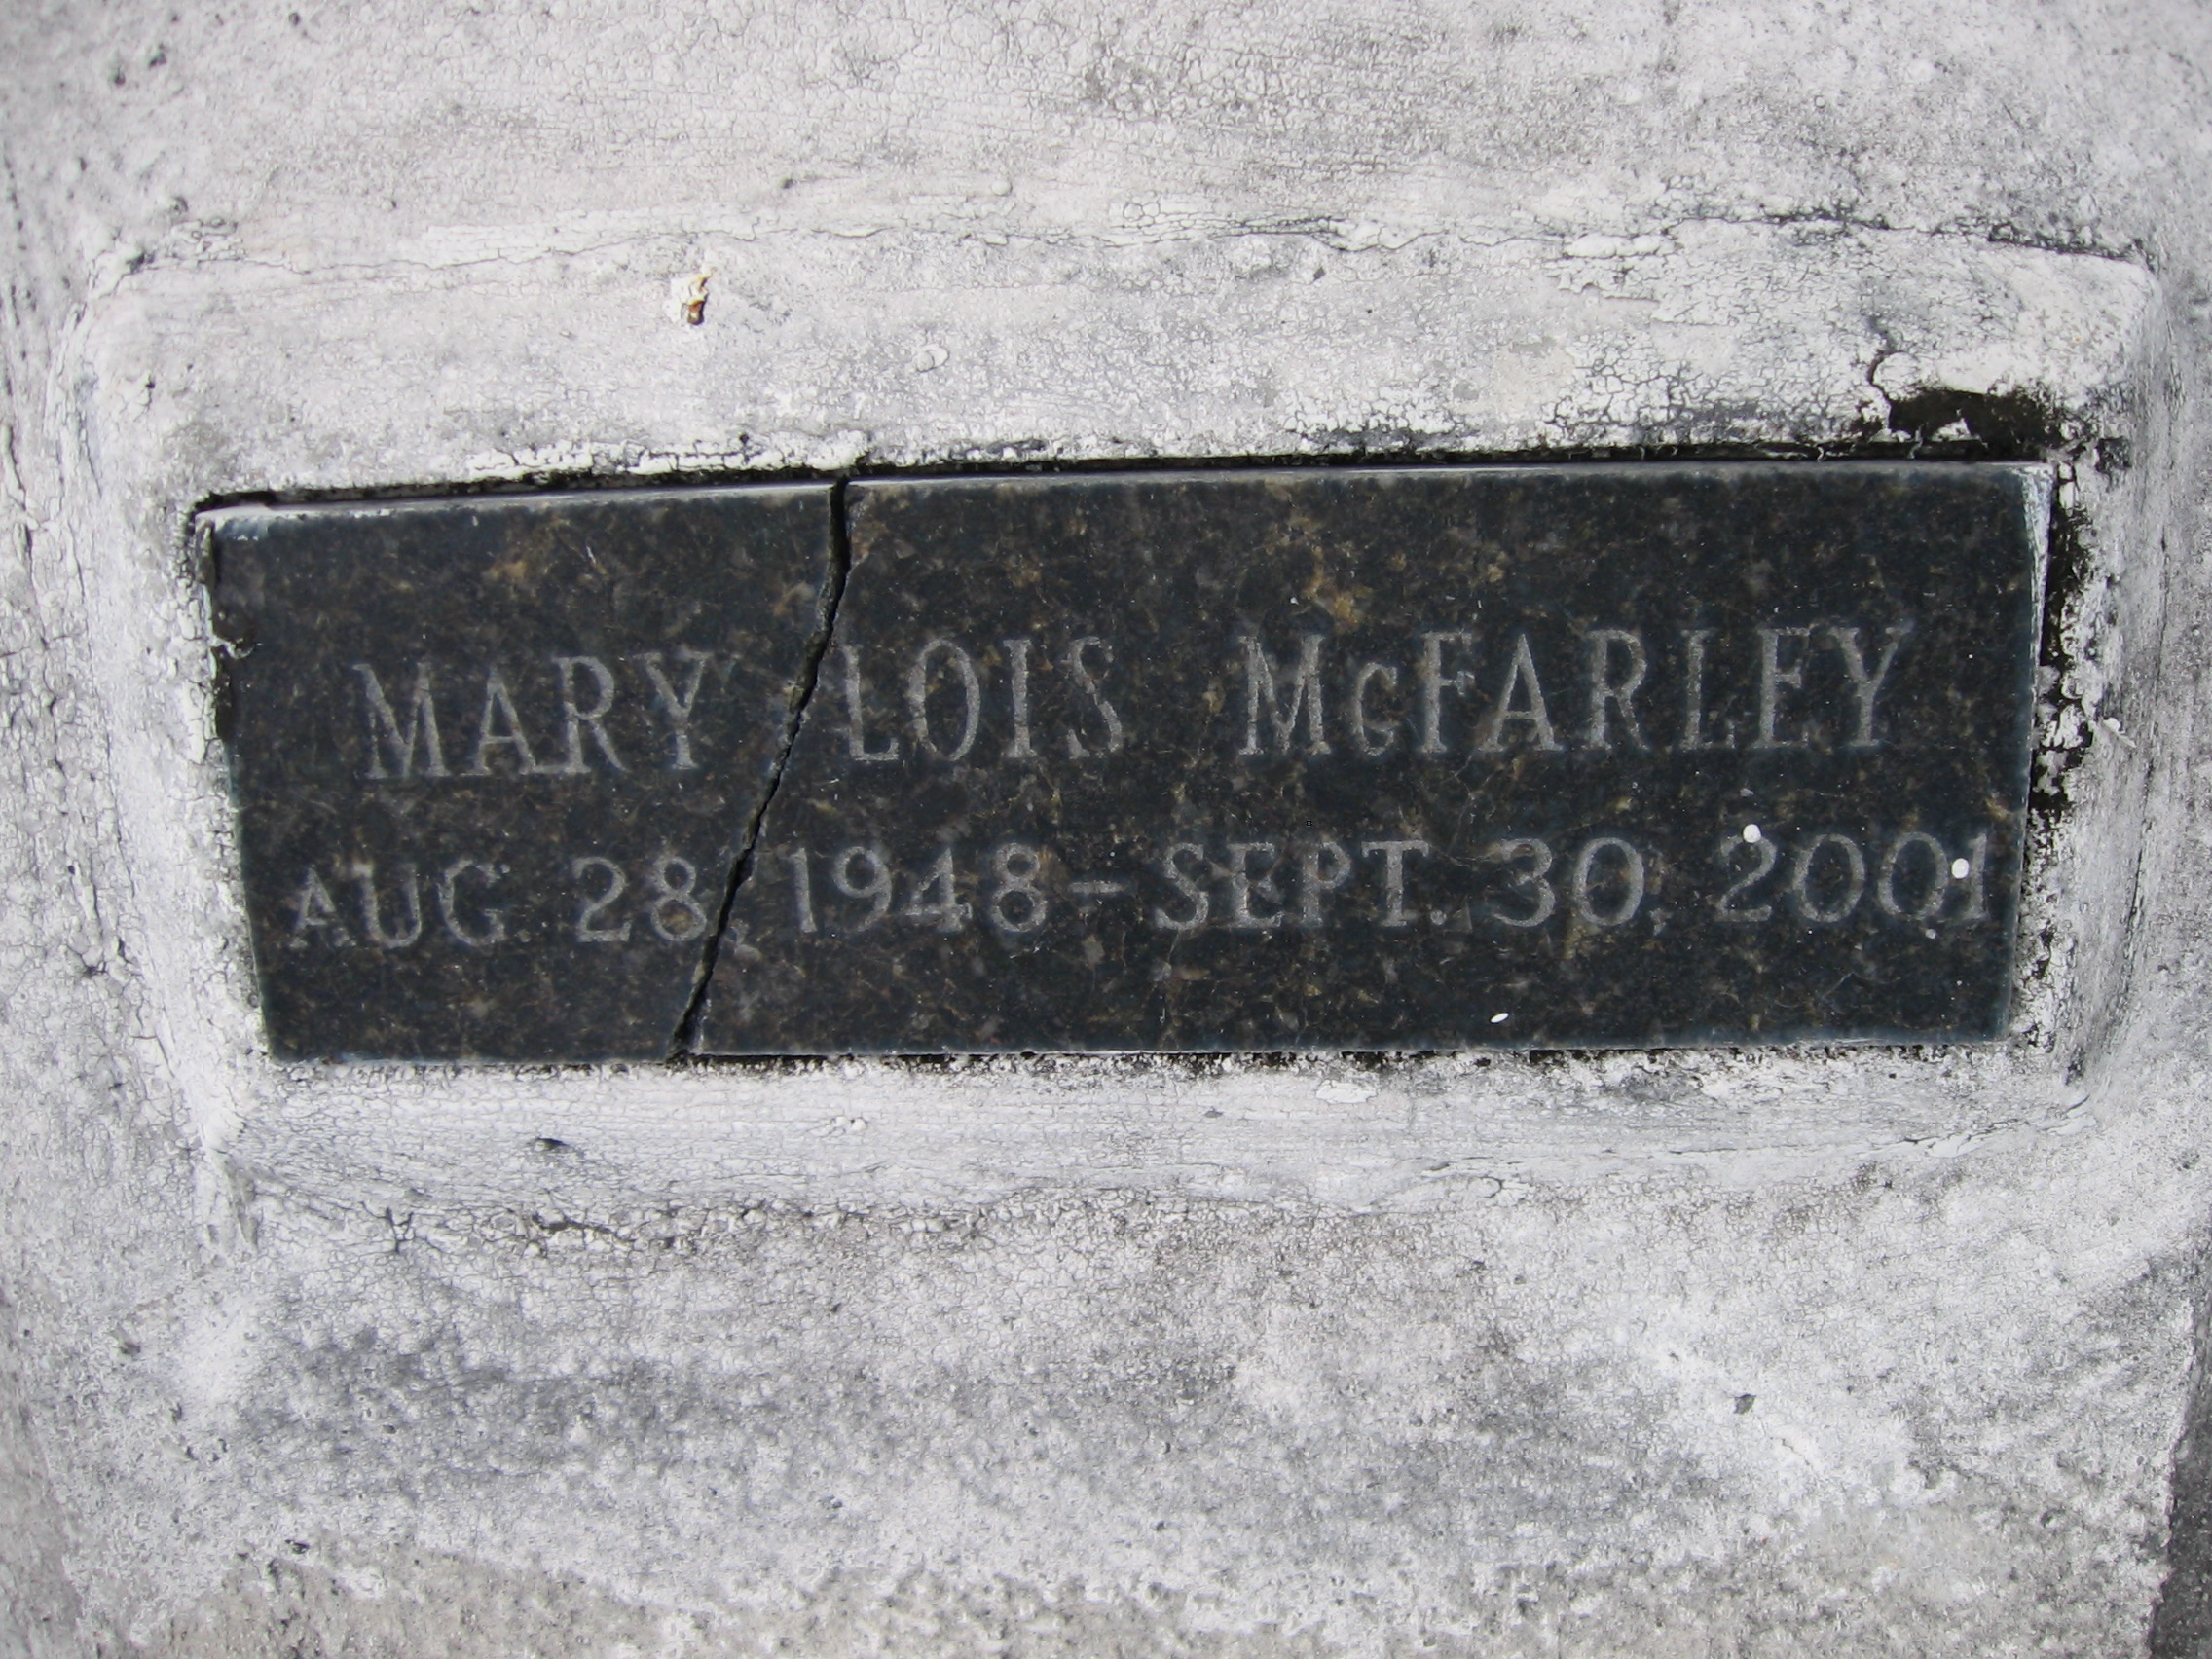 Mary Lois McFarley